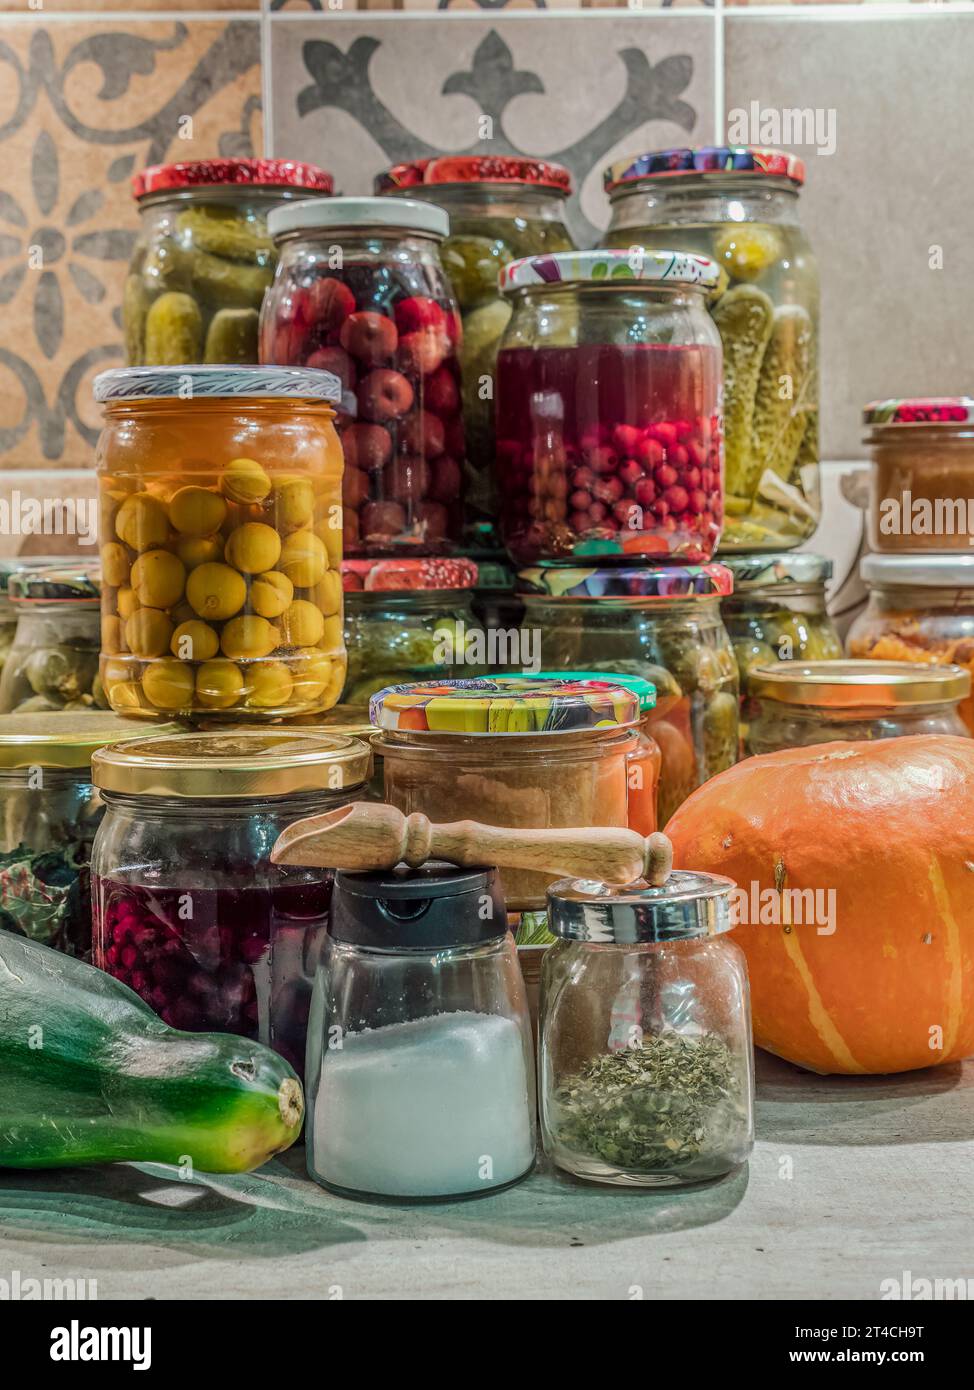 Confitures de fruits et légumes assorties dans des bocaux empilés sur la table de cuisine Banque D'Images